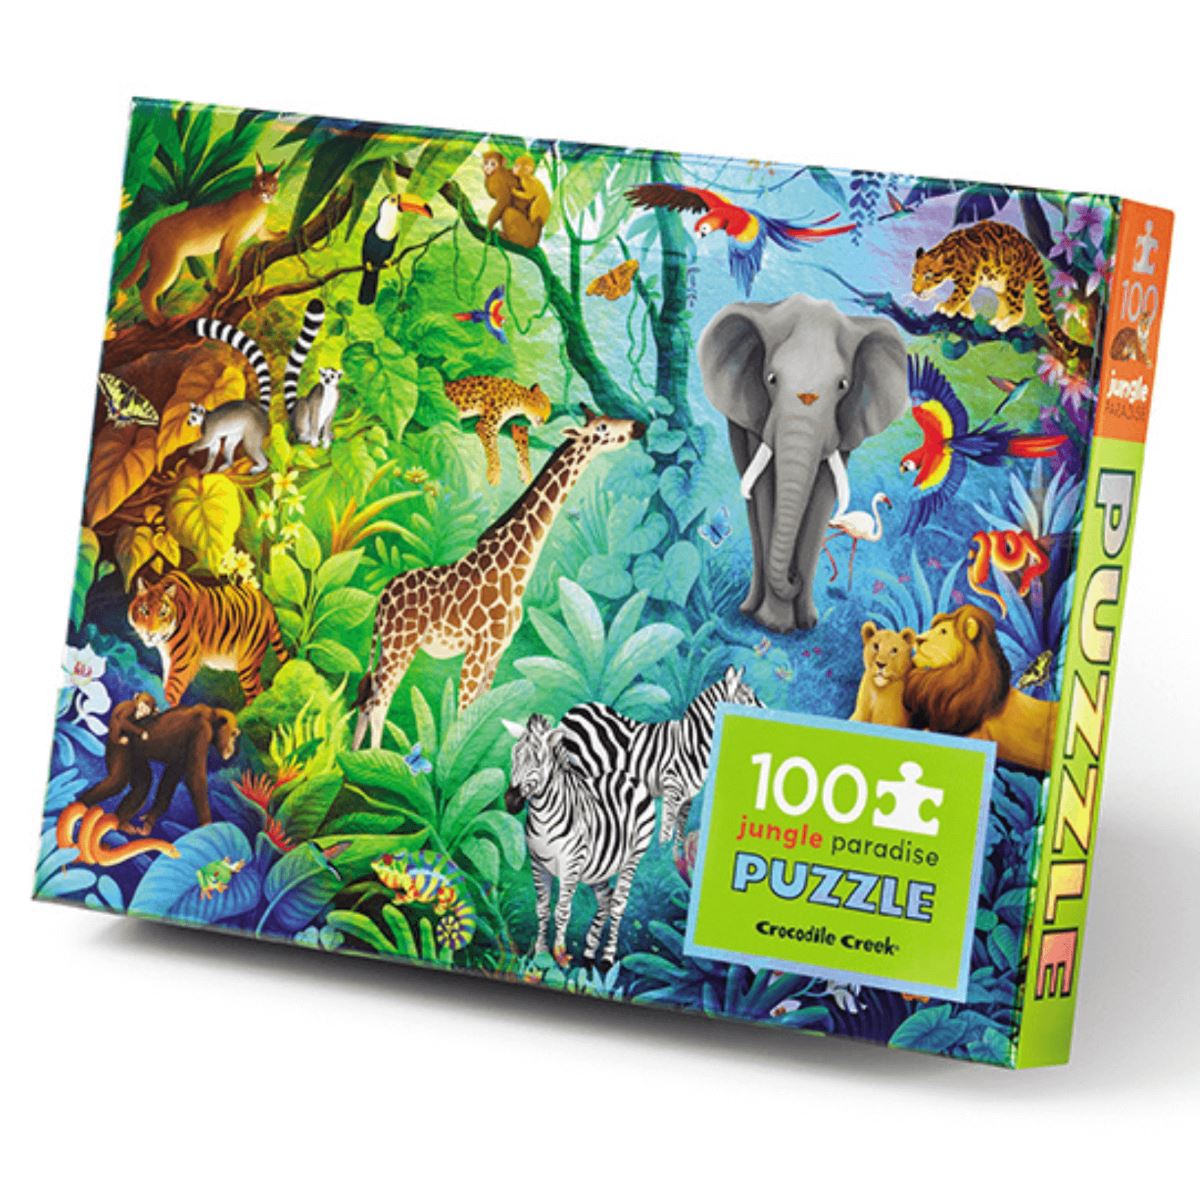 Holographic Puzzle 100pc - Jungle Paradise